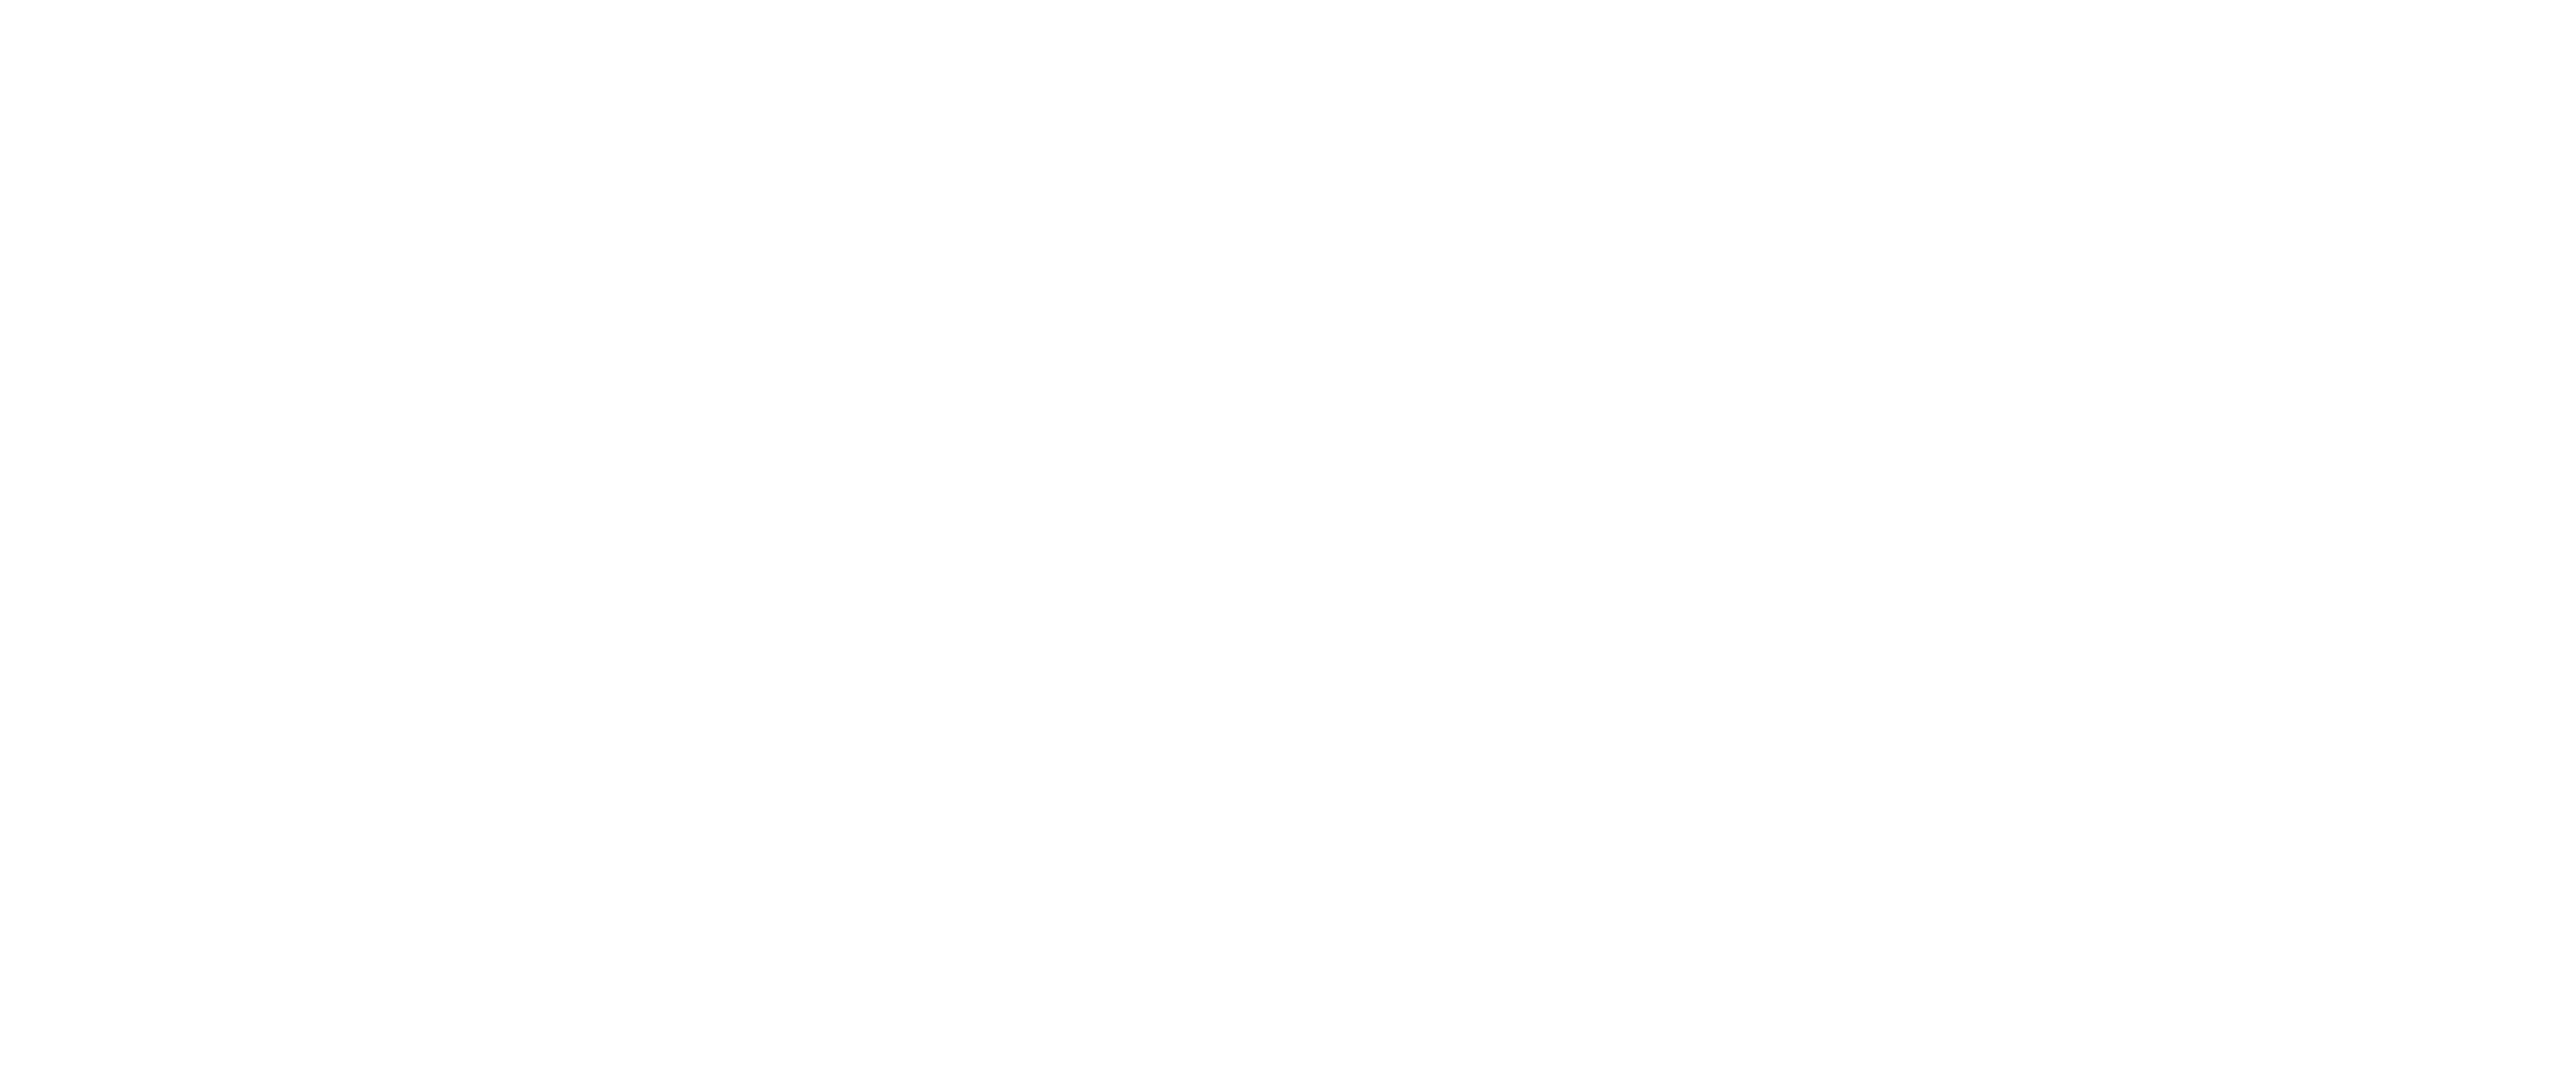 Penzion Rechle